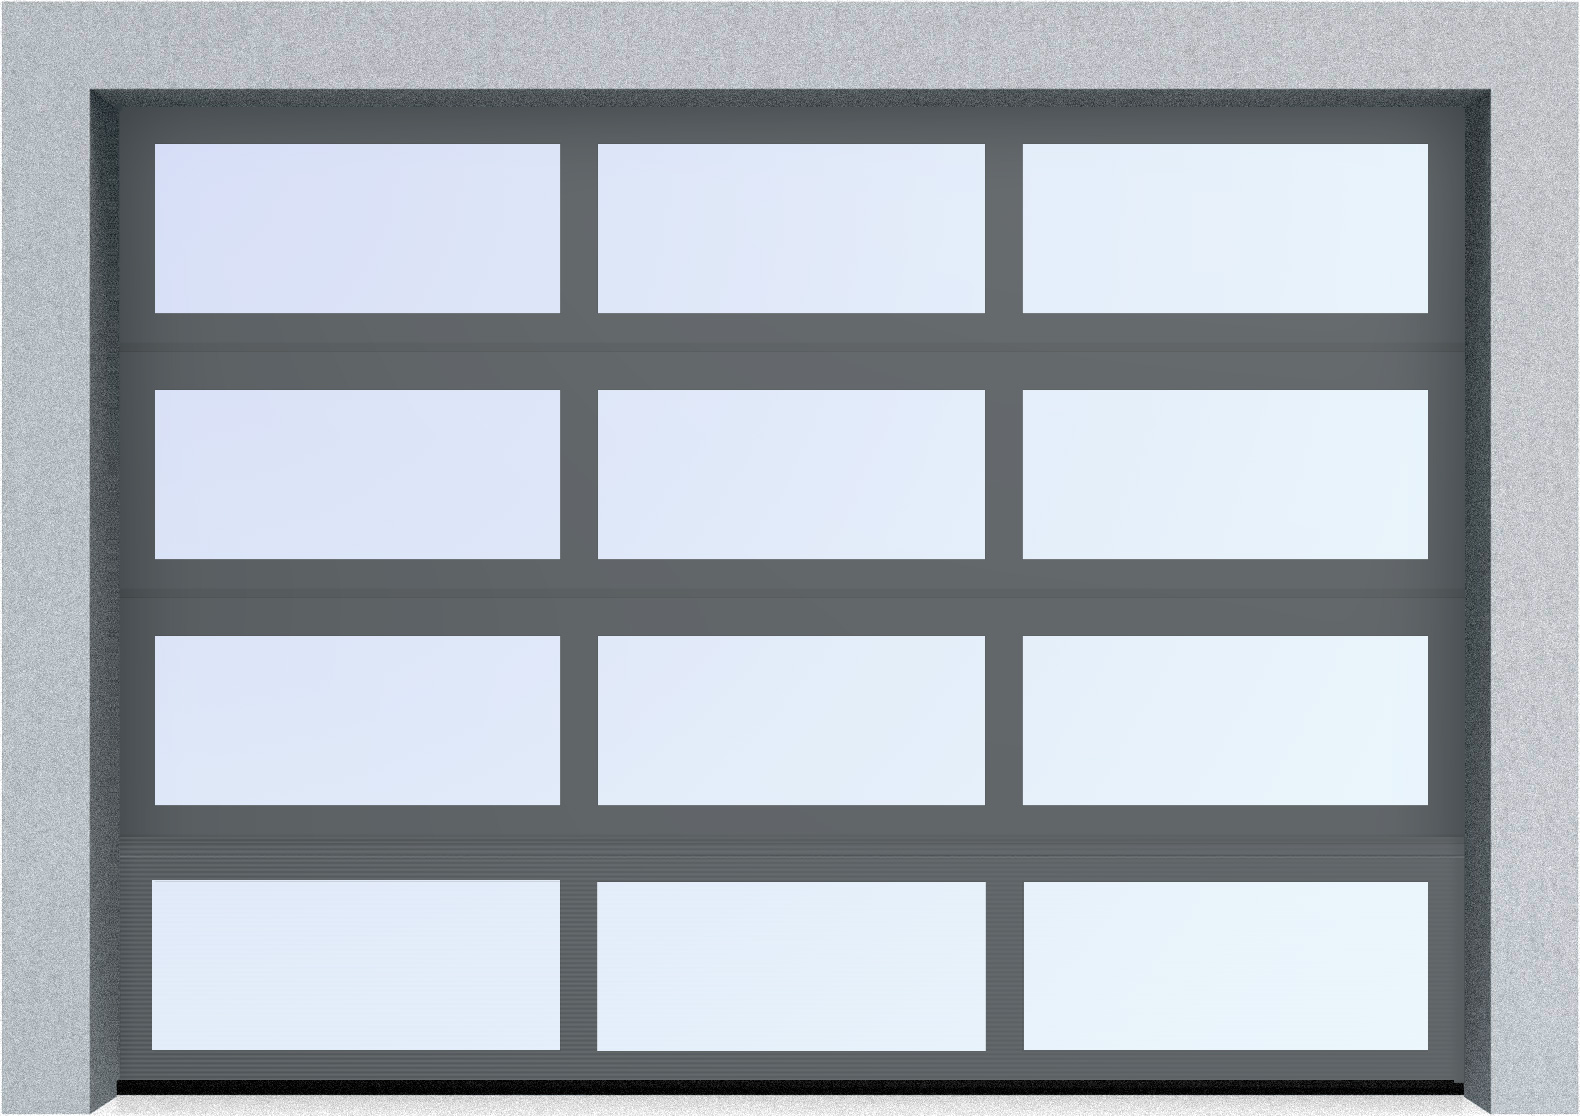  Секционные панорамные ворота серии AluTrend (АЛП) 2625х1875 нижняя панель стандартные цвета, фото 5 